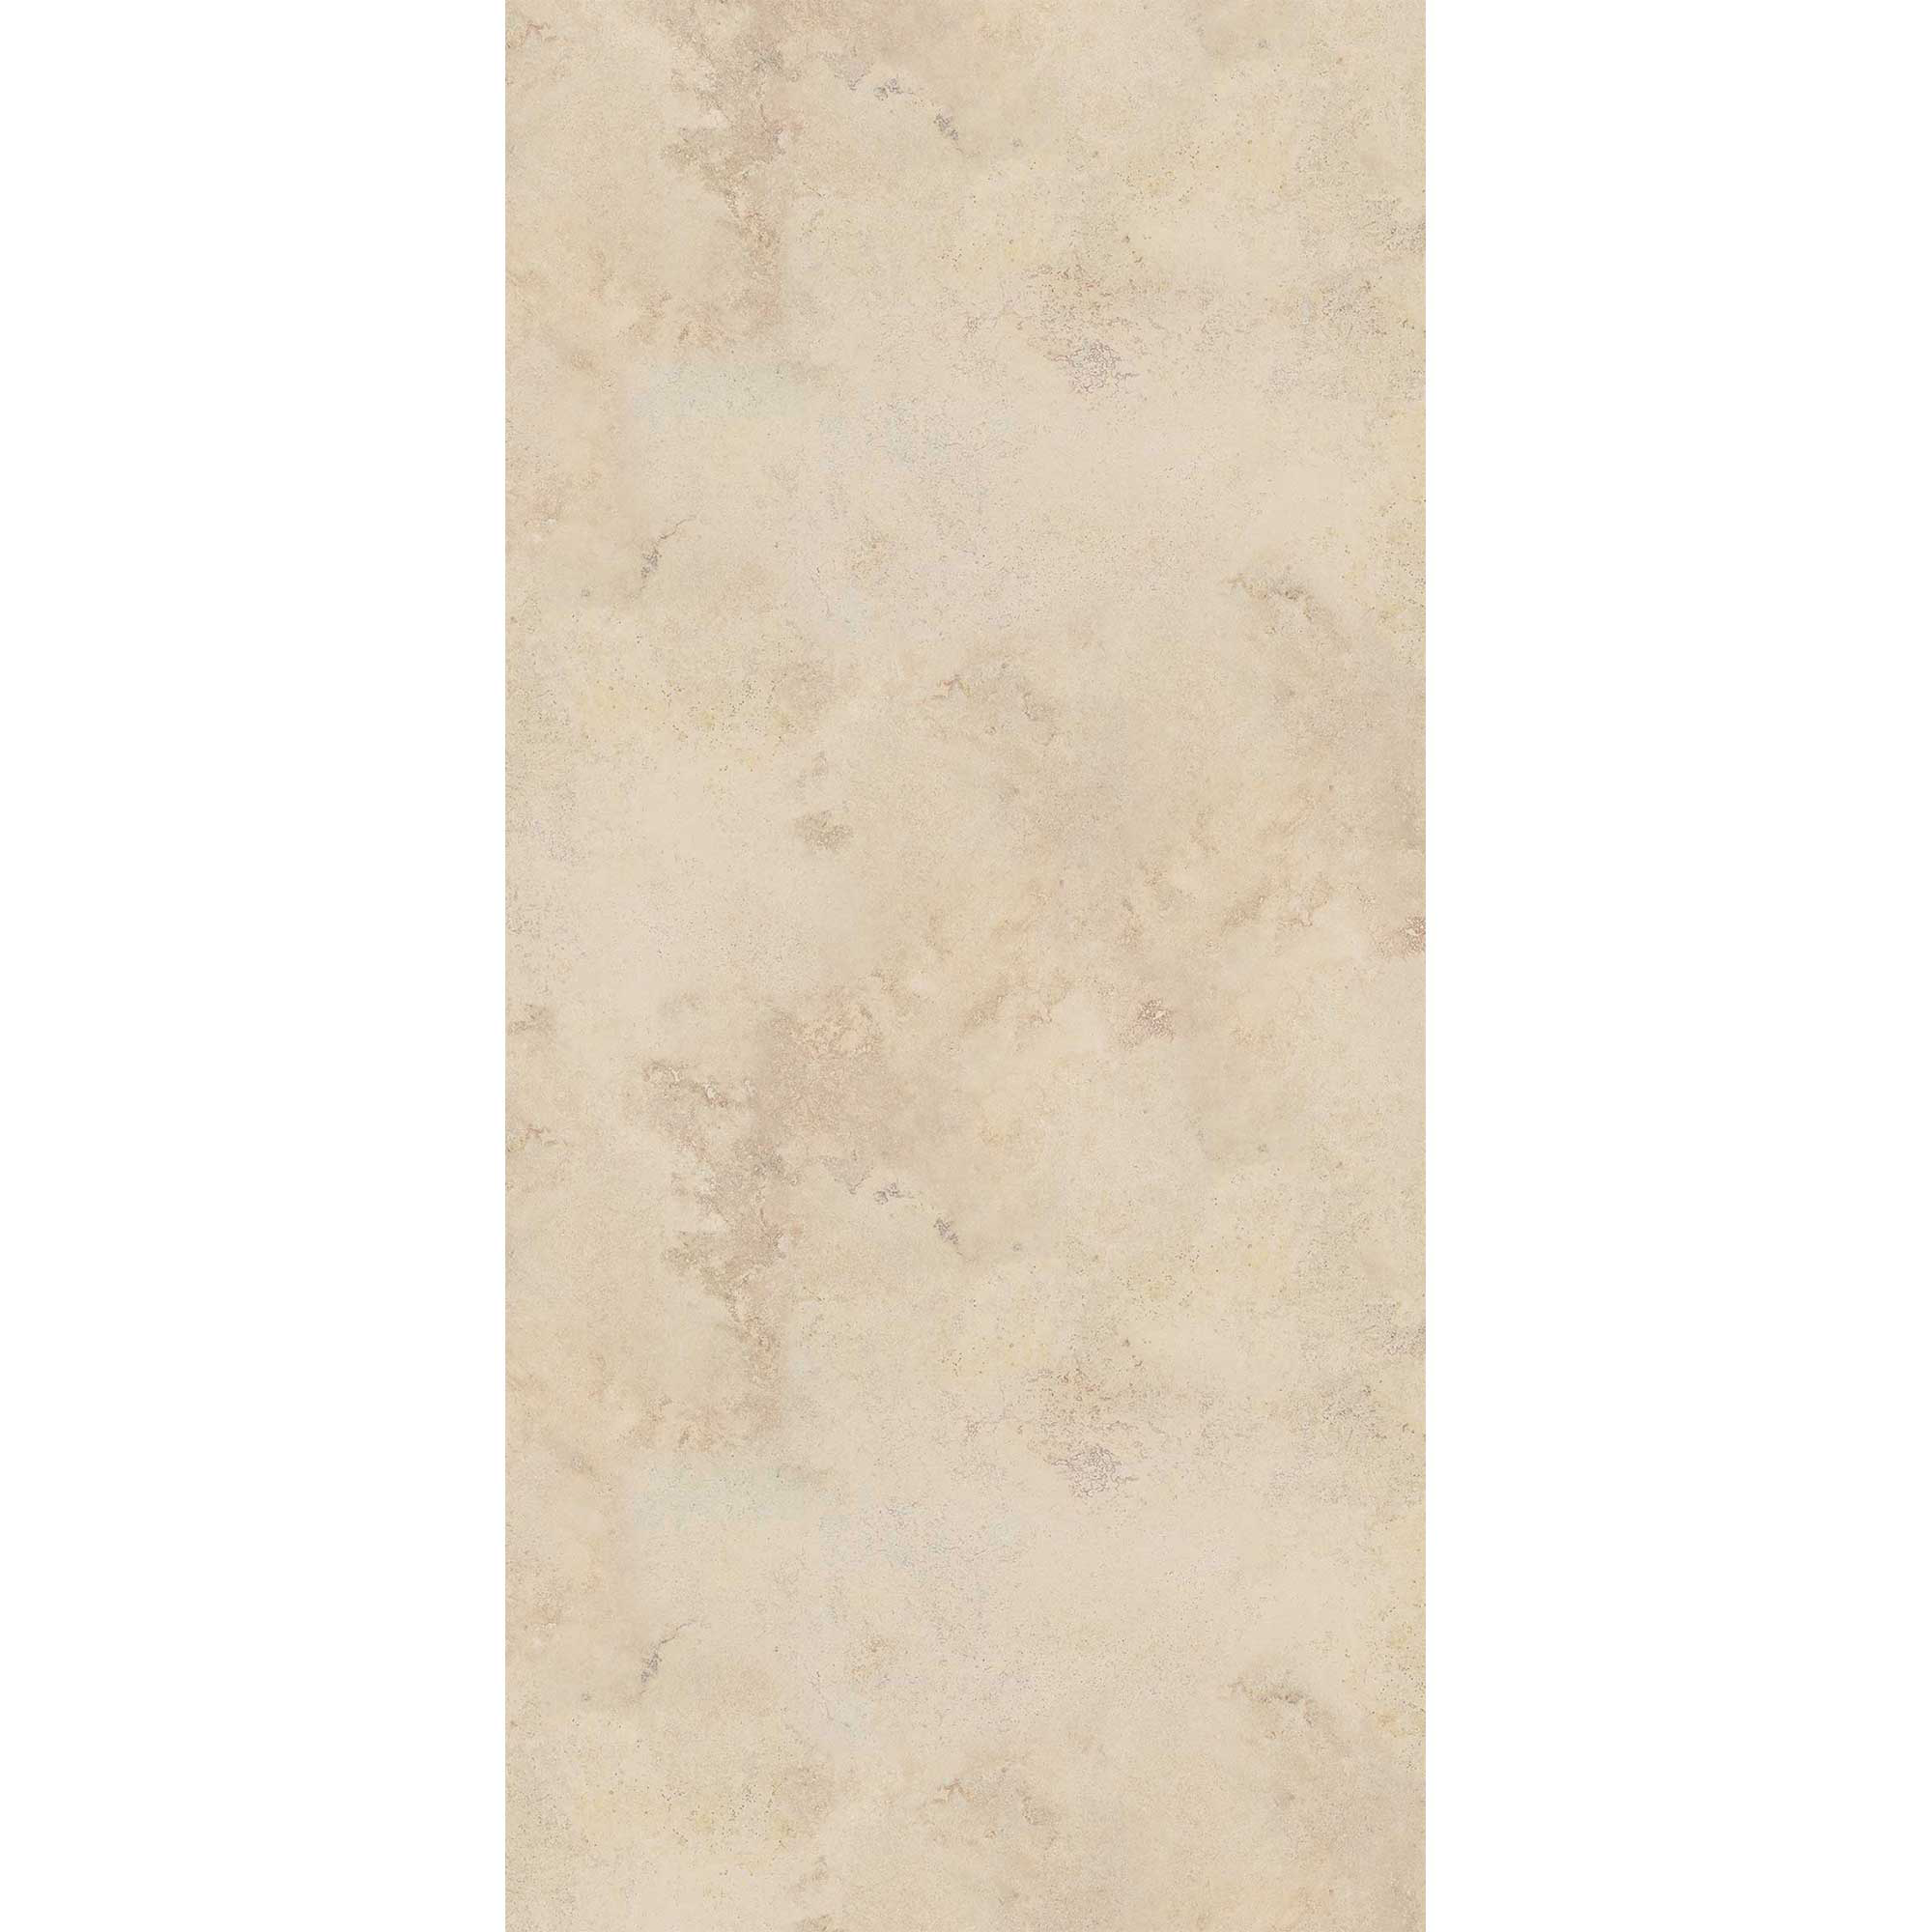 Duschrückwand 'Quick72' hochglanz Sandsteinoptik beige 150 x 255 cm + product picture